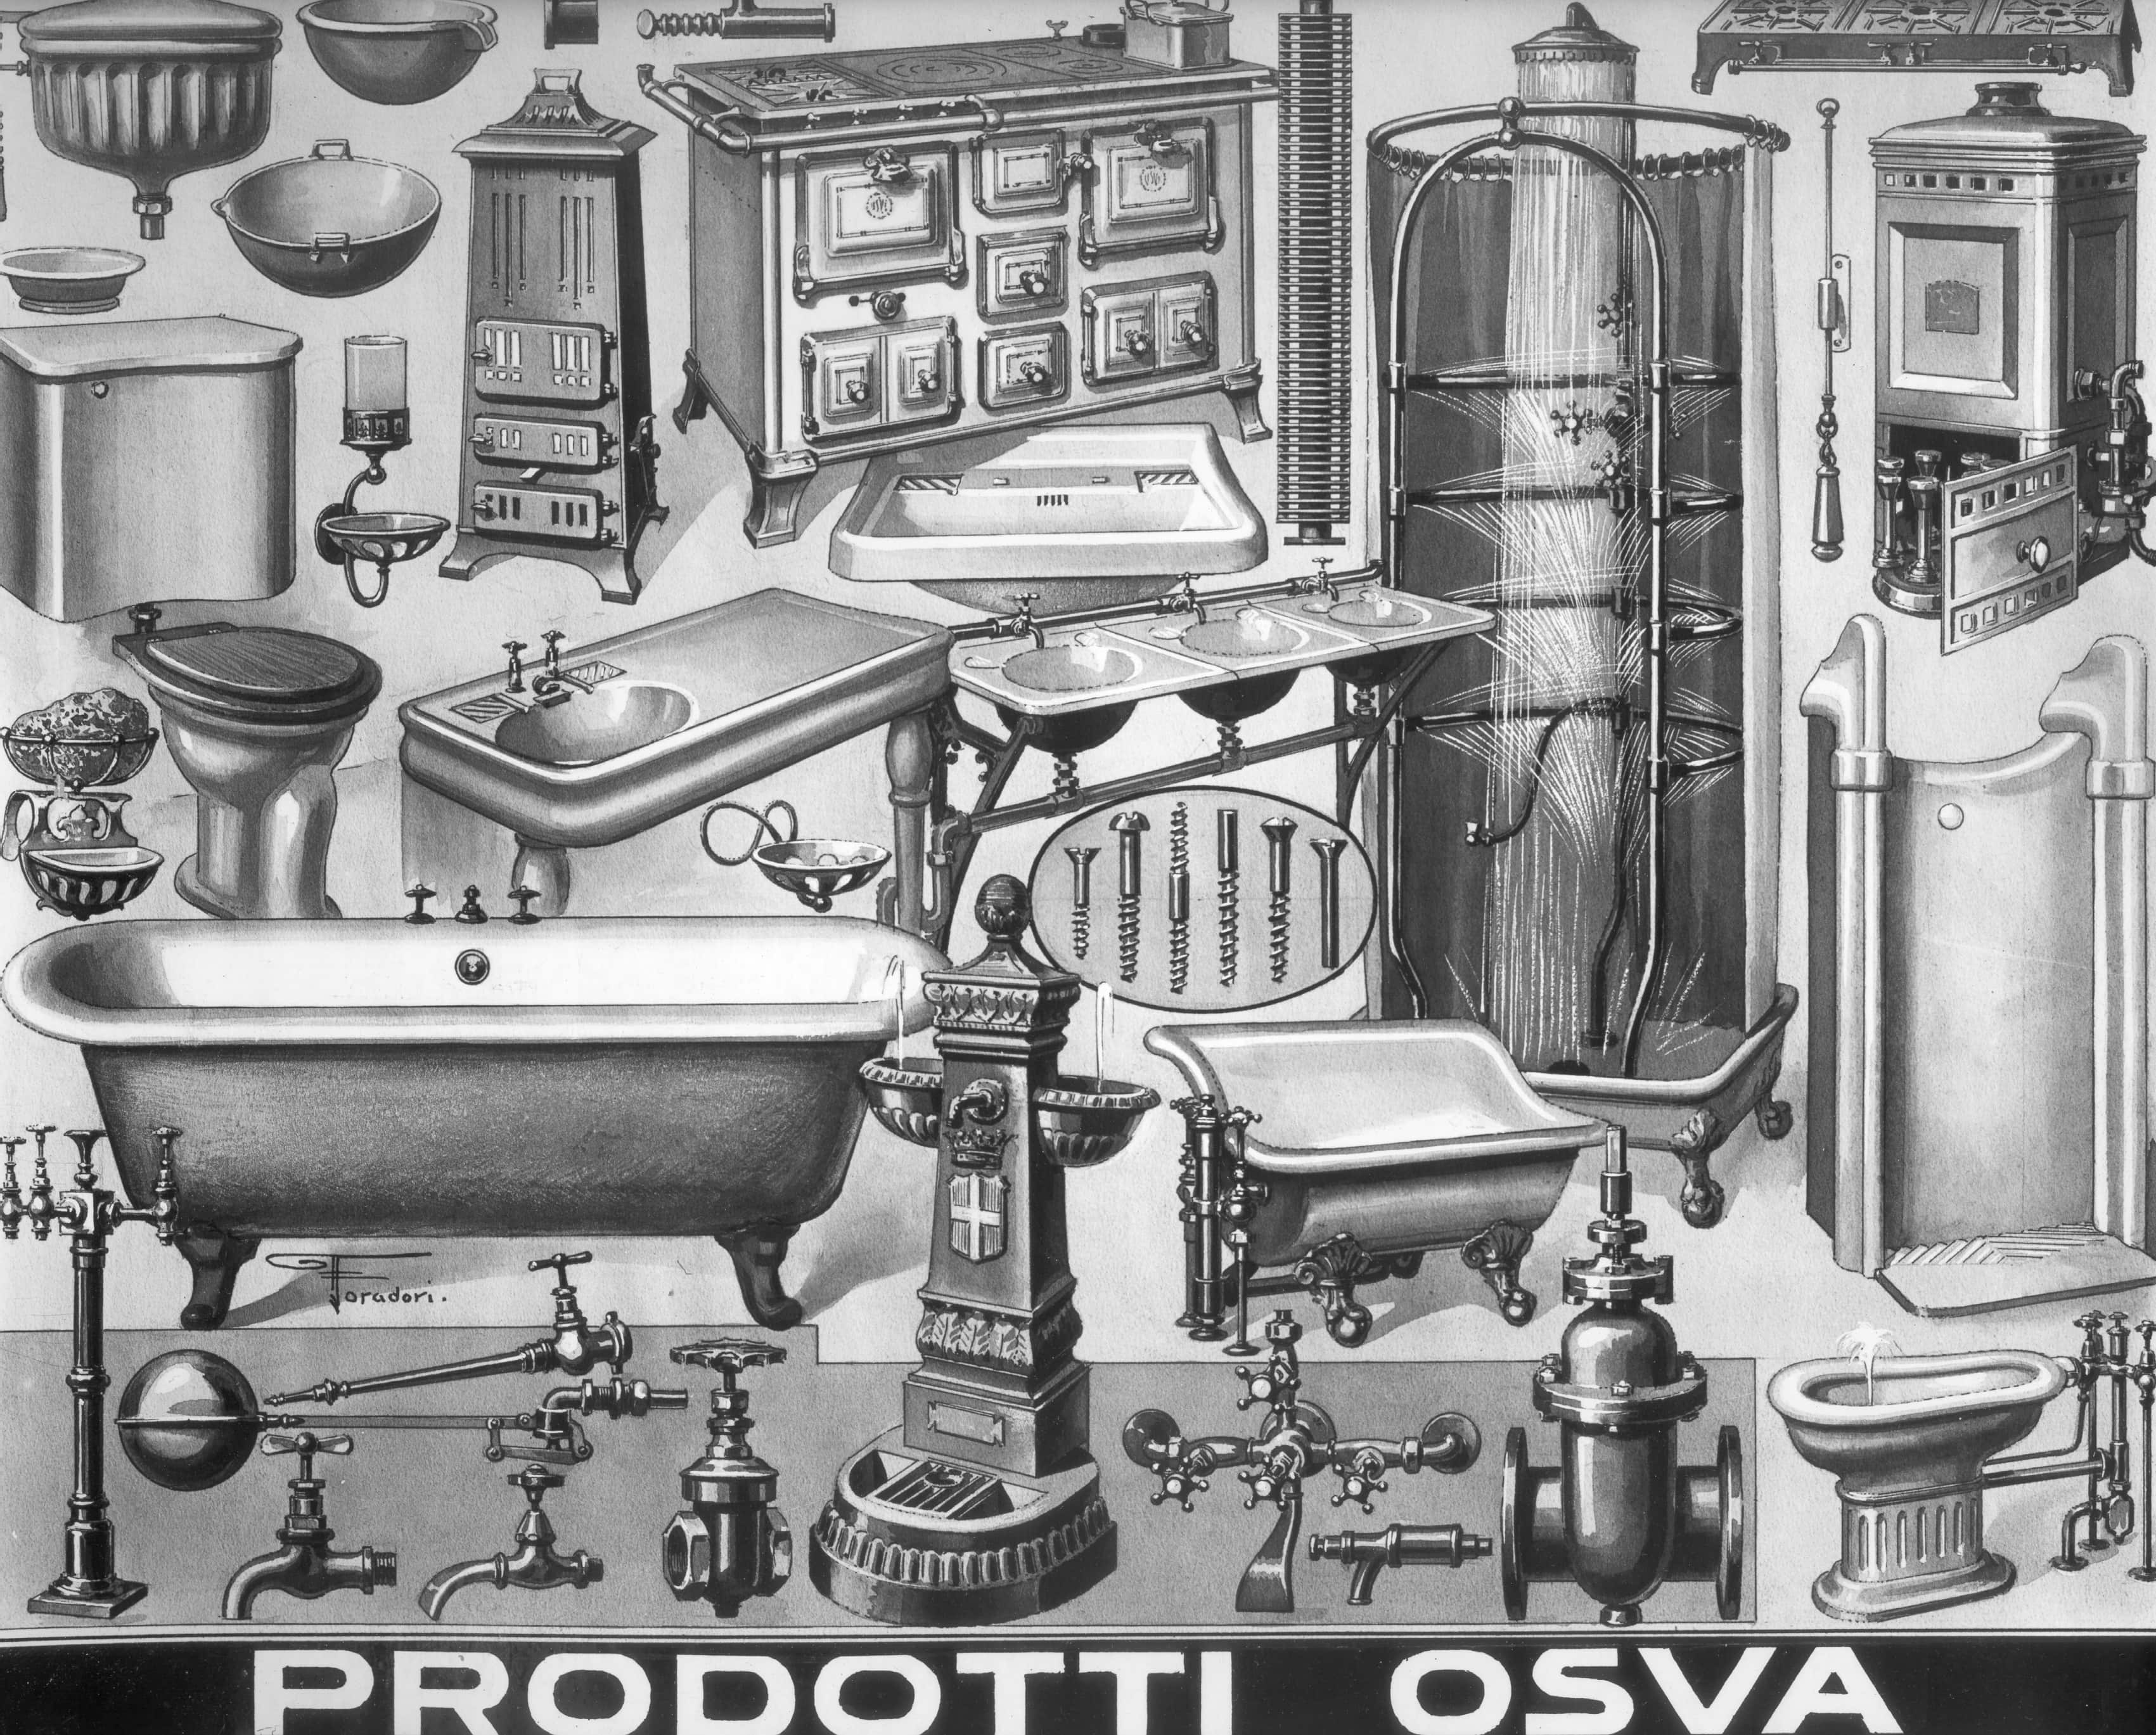 Girolamo Bombelli, O.S.V.A. (Officine di Sesto S. Giovanni & Valsecchi A.) - Catalogo dei 'Prodotti O.S.V.A.' disegnato da Foradori /null, 1951-2000, gelatina ai sali d'argento/ vetro, C018261